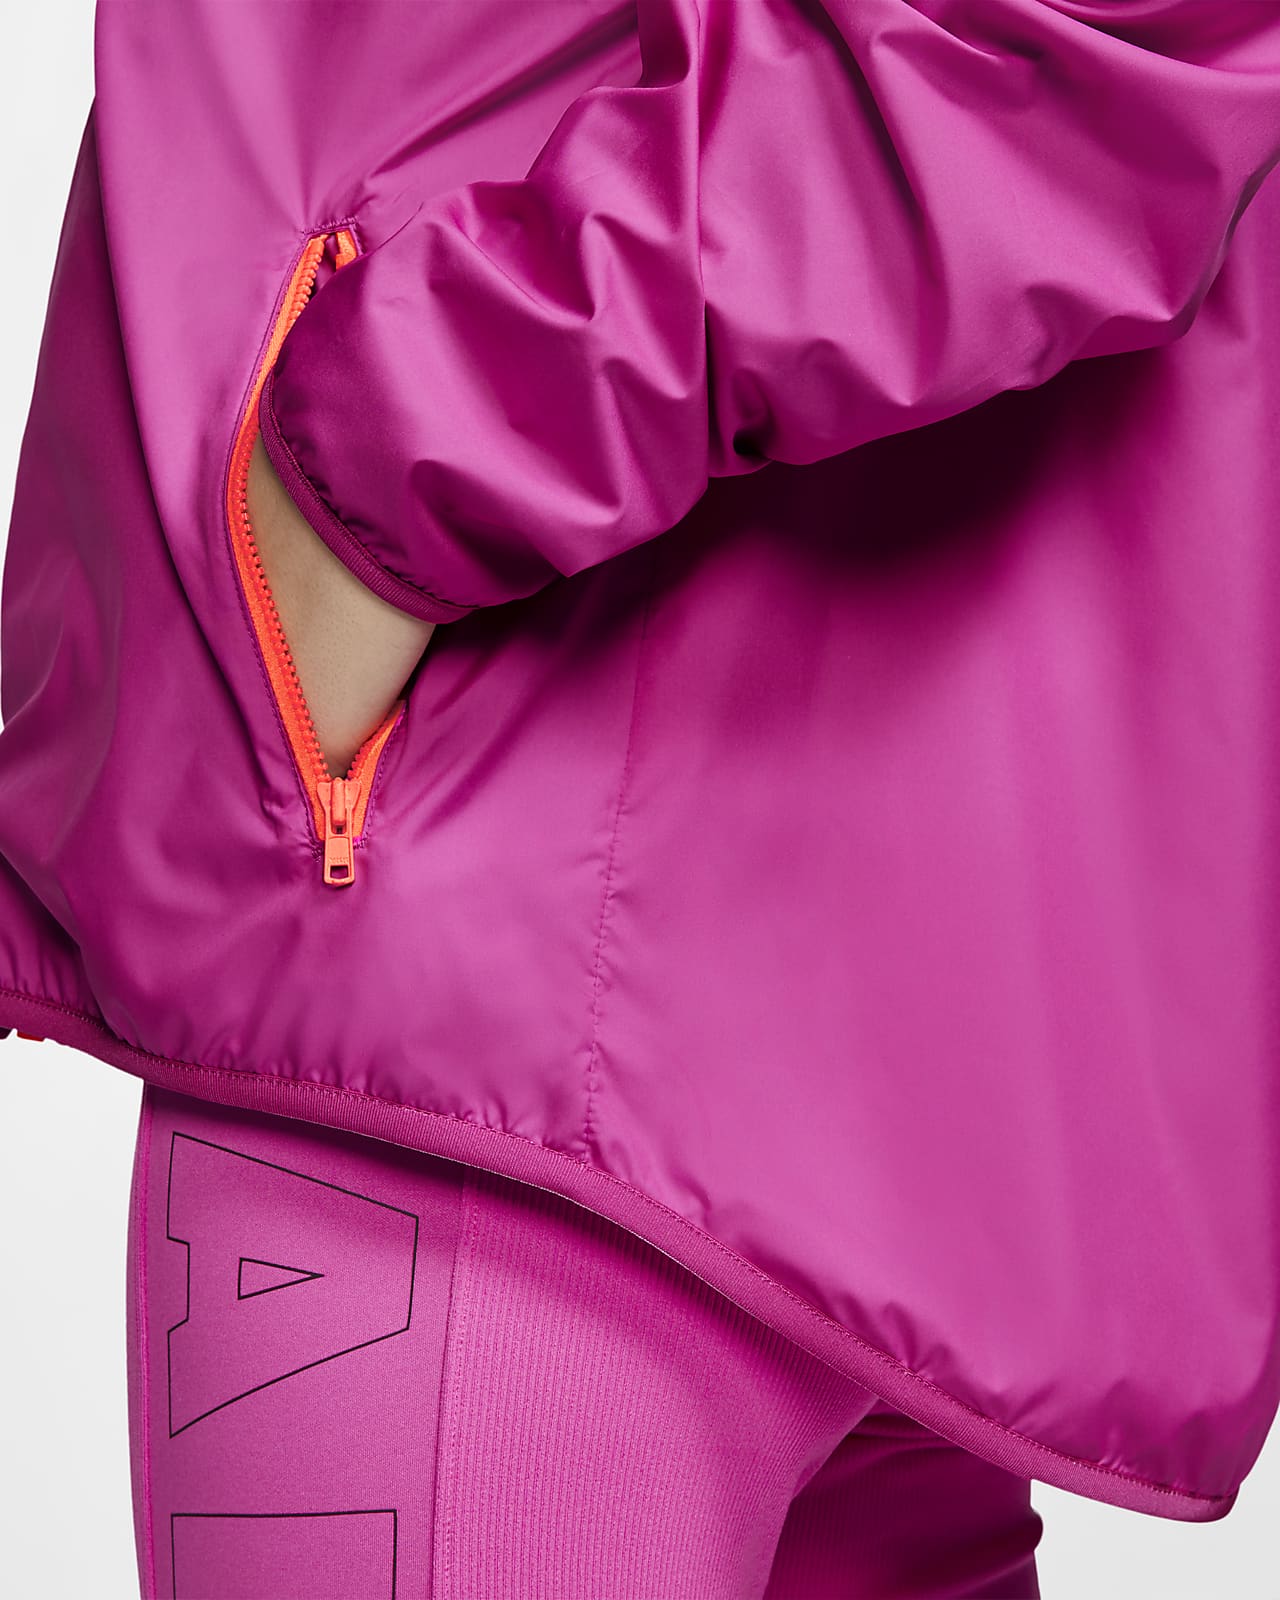 nike women's sportswear original windrunner jacket